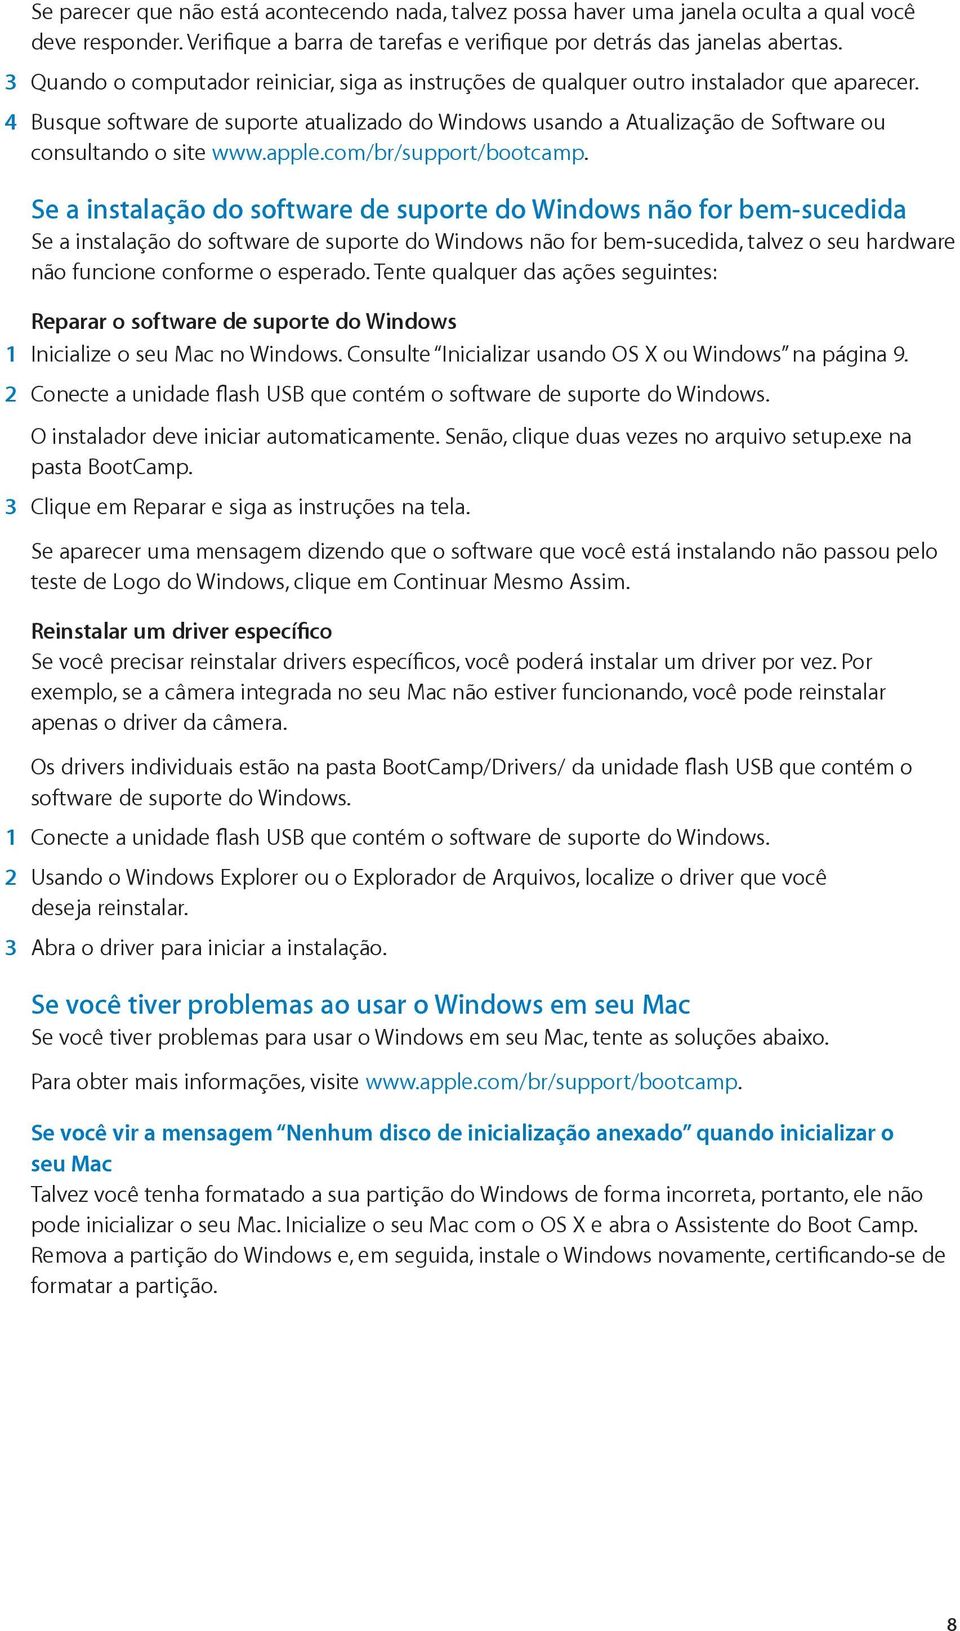 4 Busque software de suporte atualizado do Windows usando a Atualização de Software ou consultando o site www.apple.com/br/support/bootcamp.